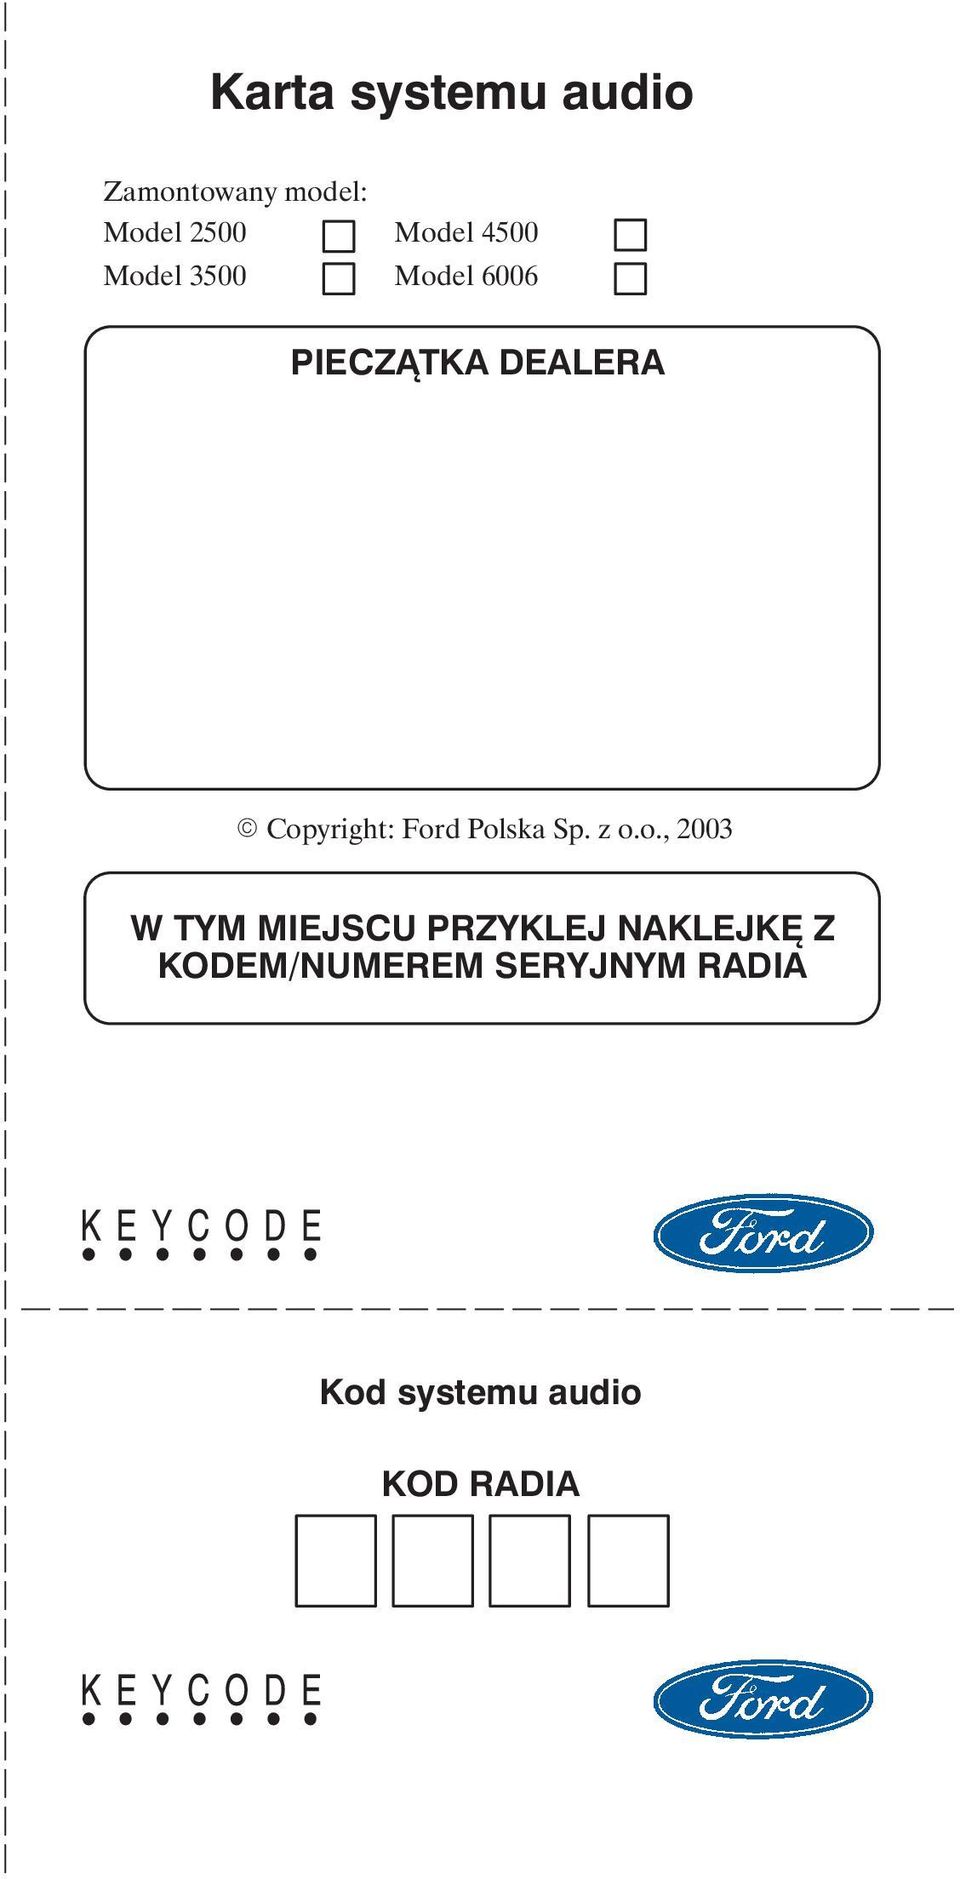 Ford Polska Sp. z o.o., 2003 W TYM MIEJSCU PRZYKLEJ